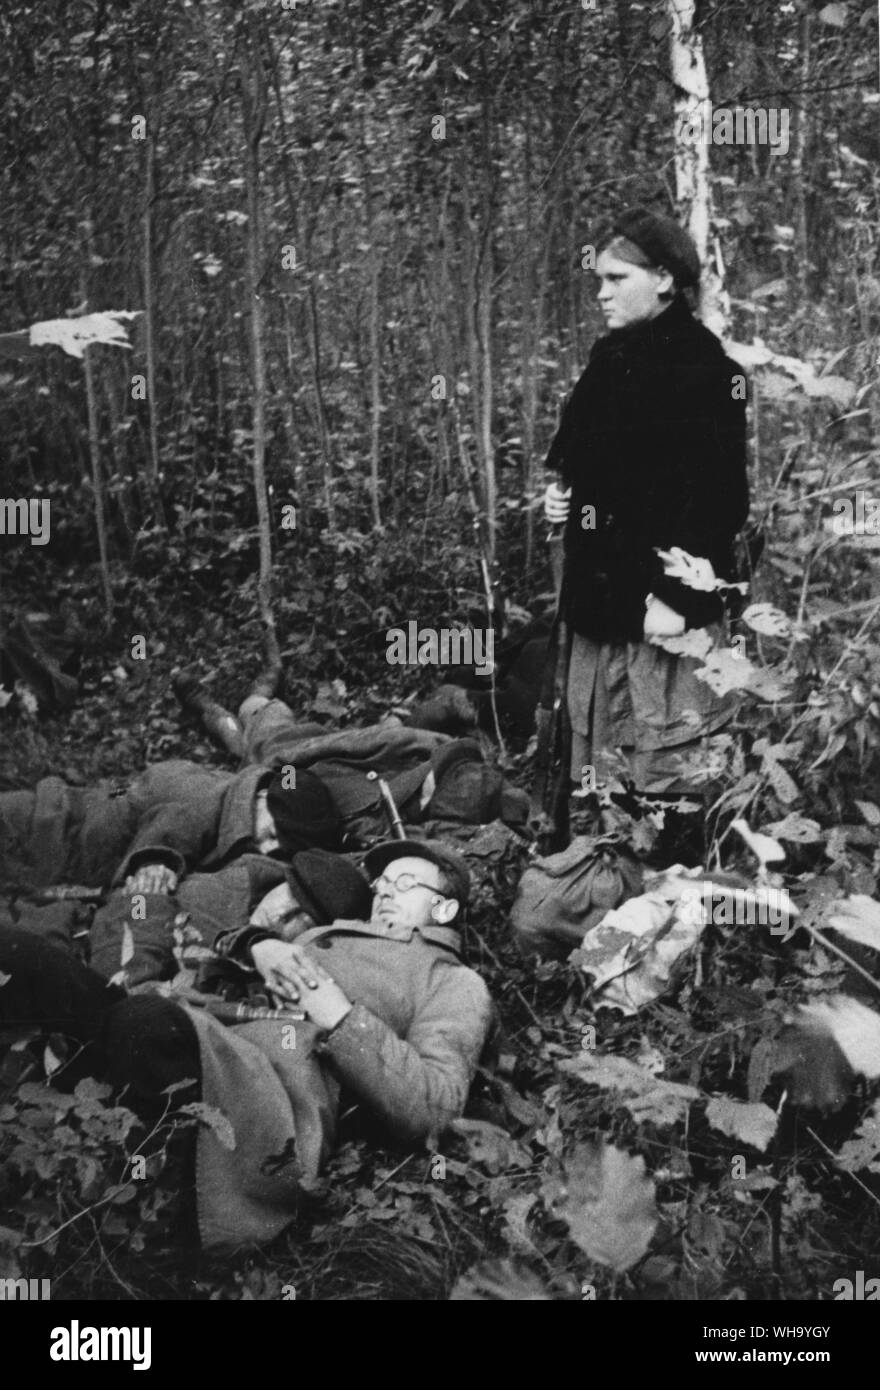 WW2: Russia/ partigiani area del Nord Ovest. Ragazza partigiano custodire i suoi compagni, che stanno dormendo dopo la battaglia. Foto Stock